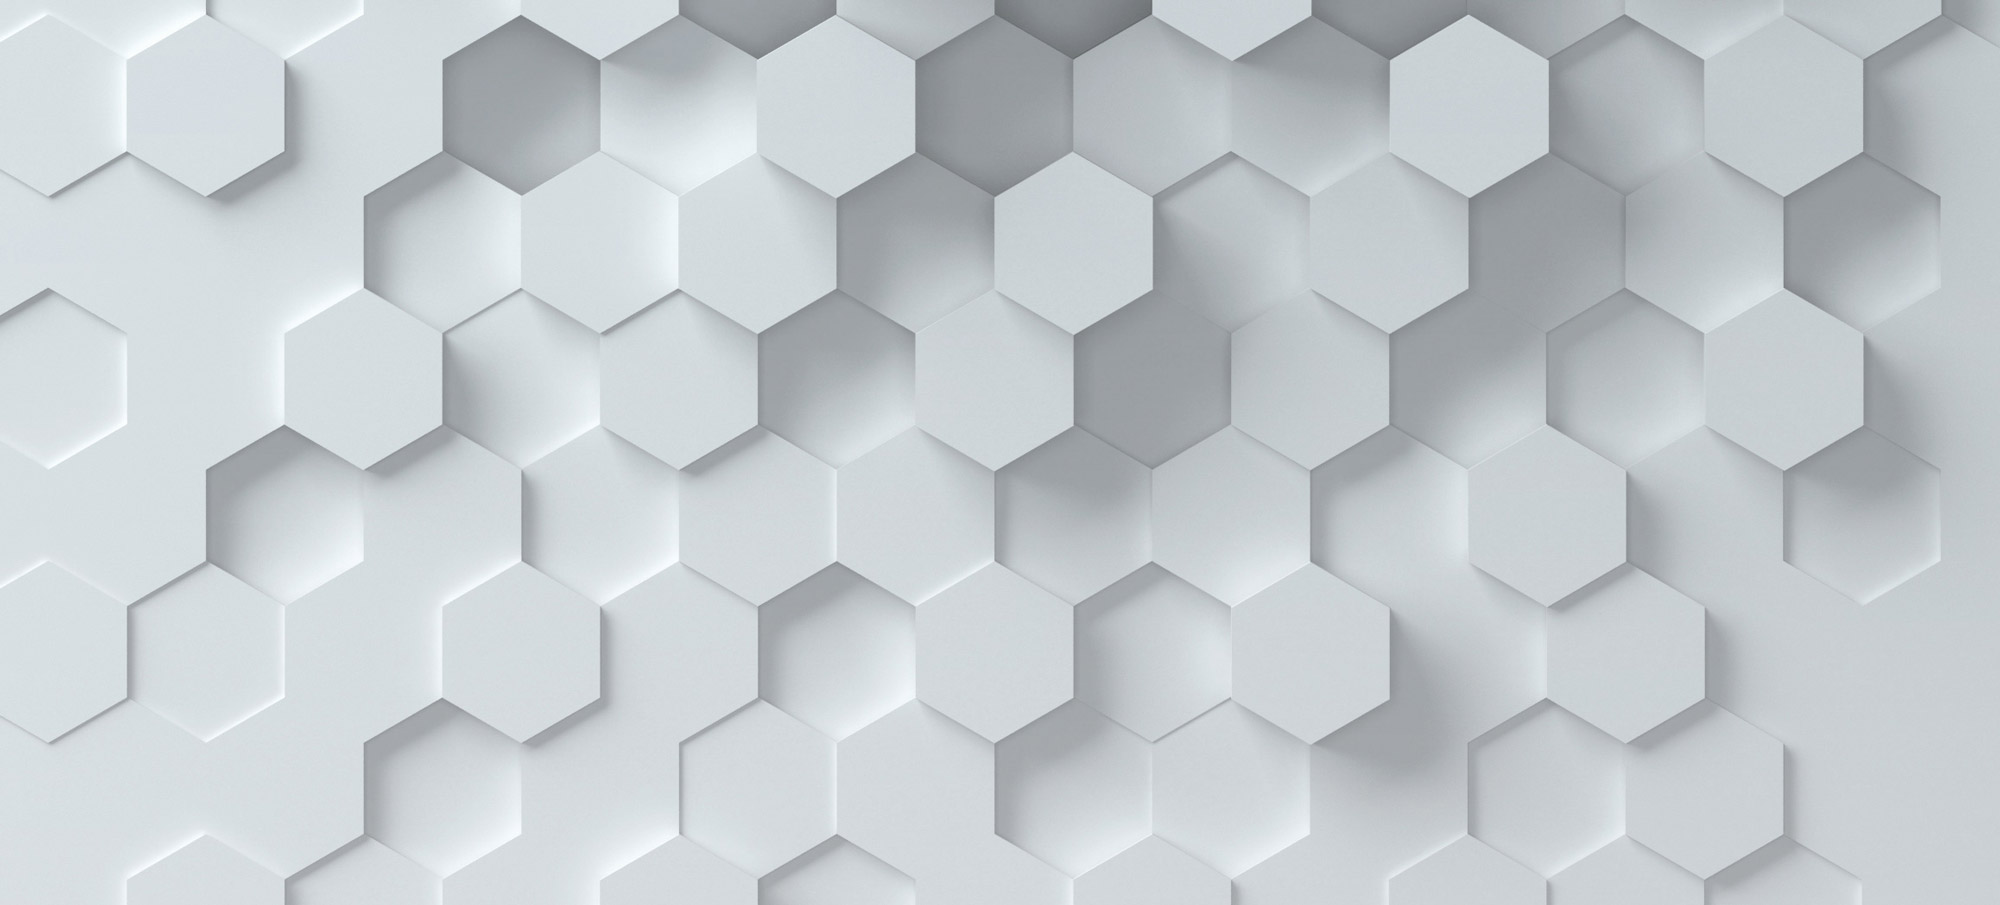 Hexagon pattern background